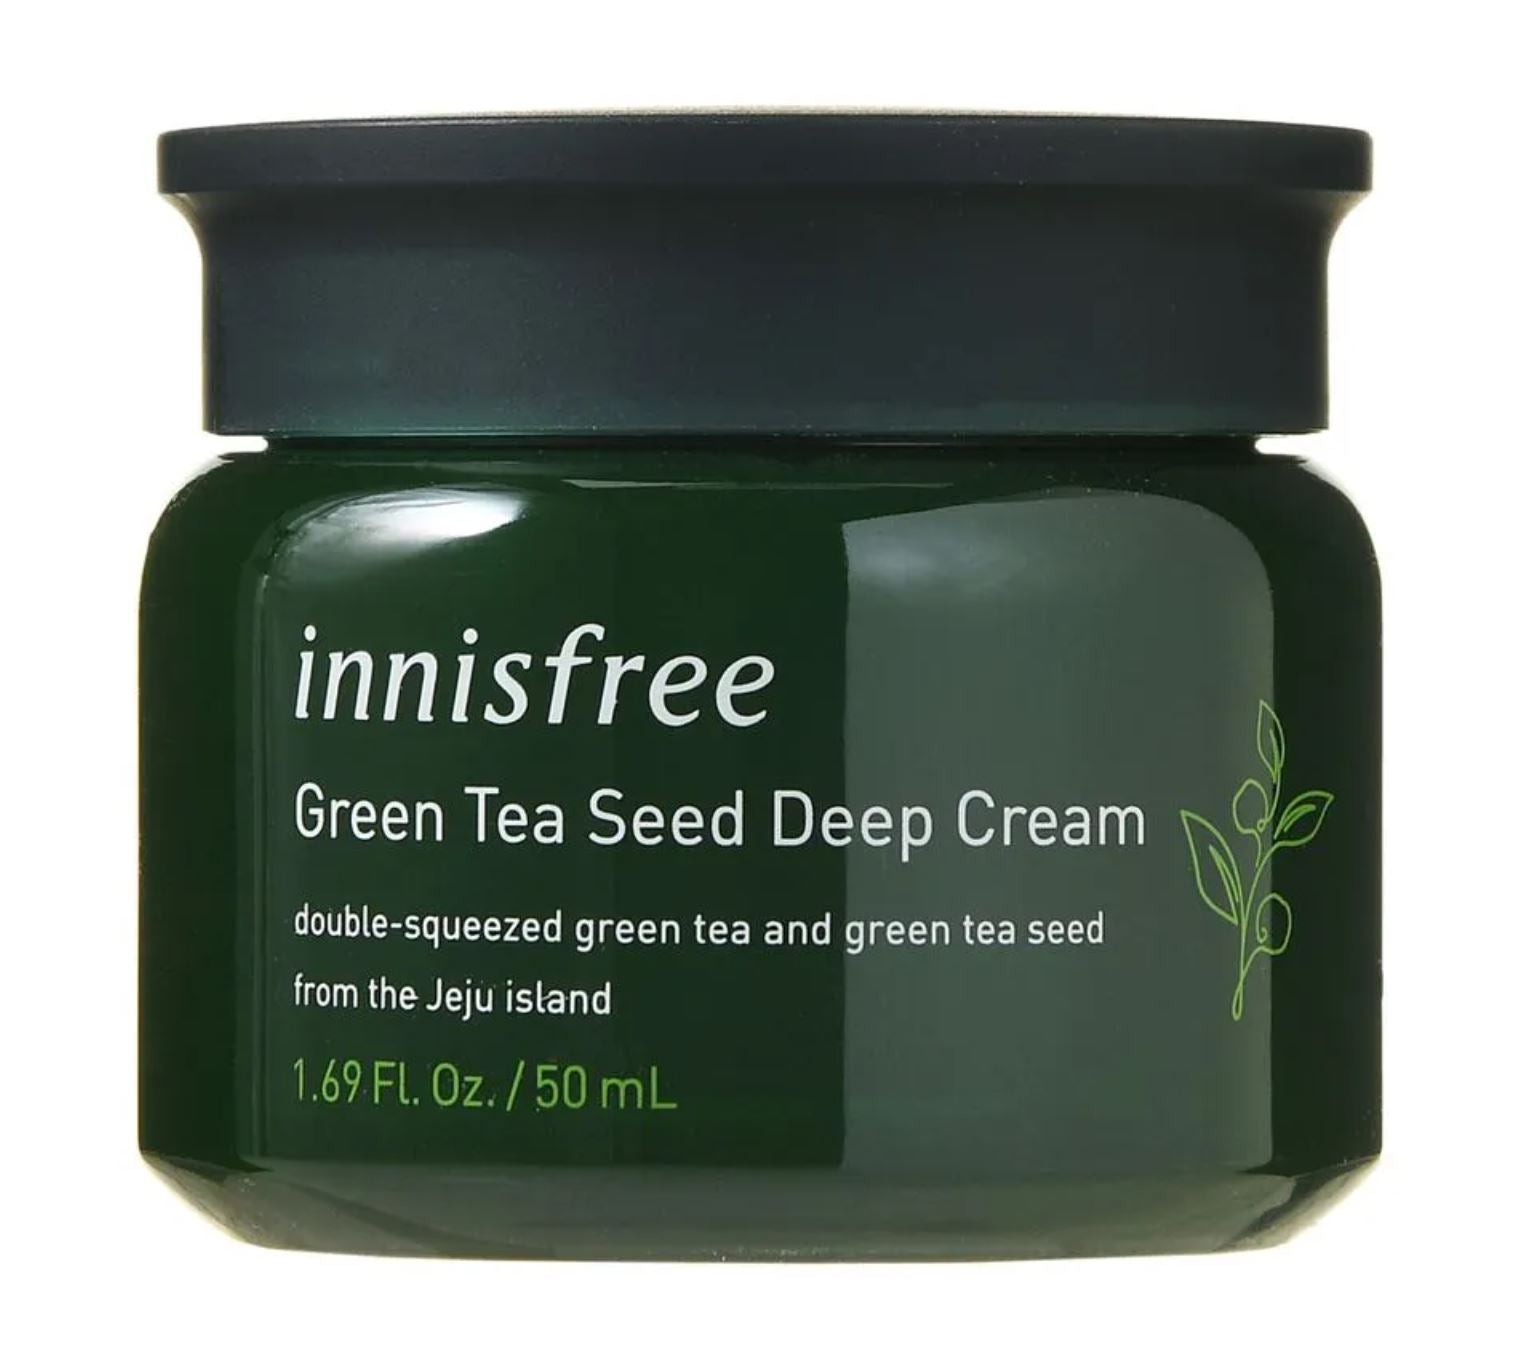 Green Tea Seed Deep Cream - 50mL